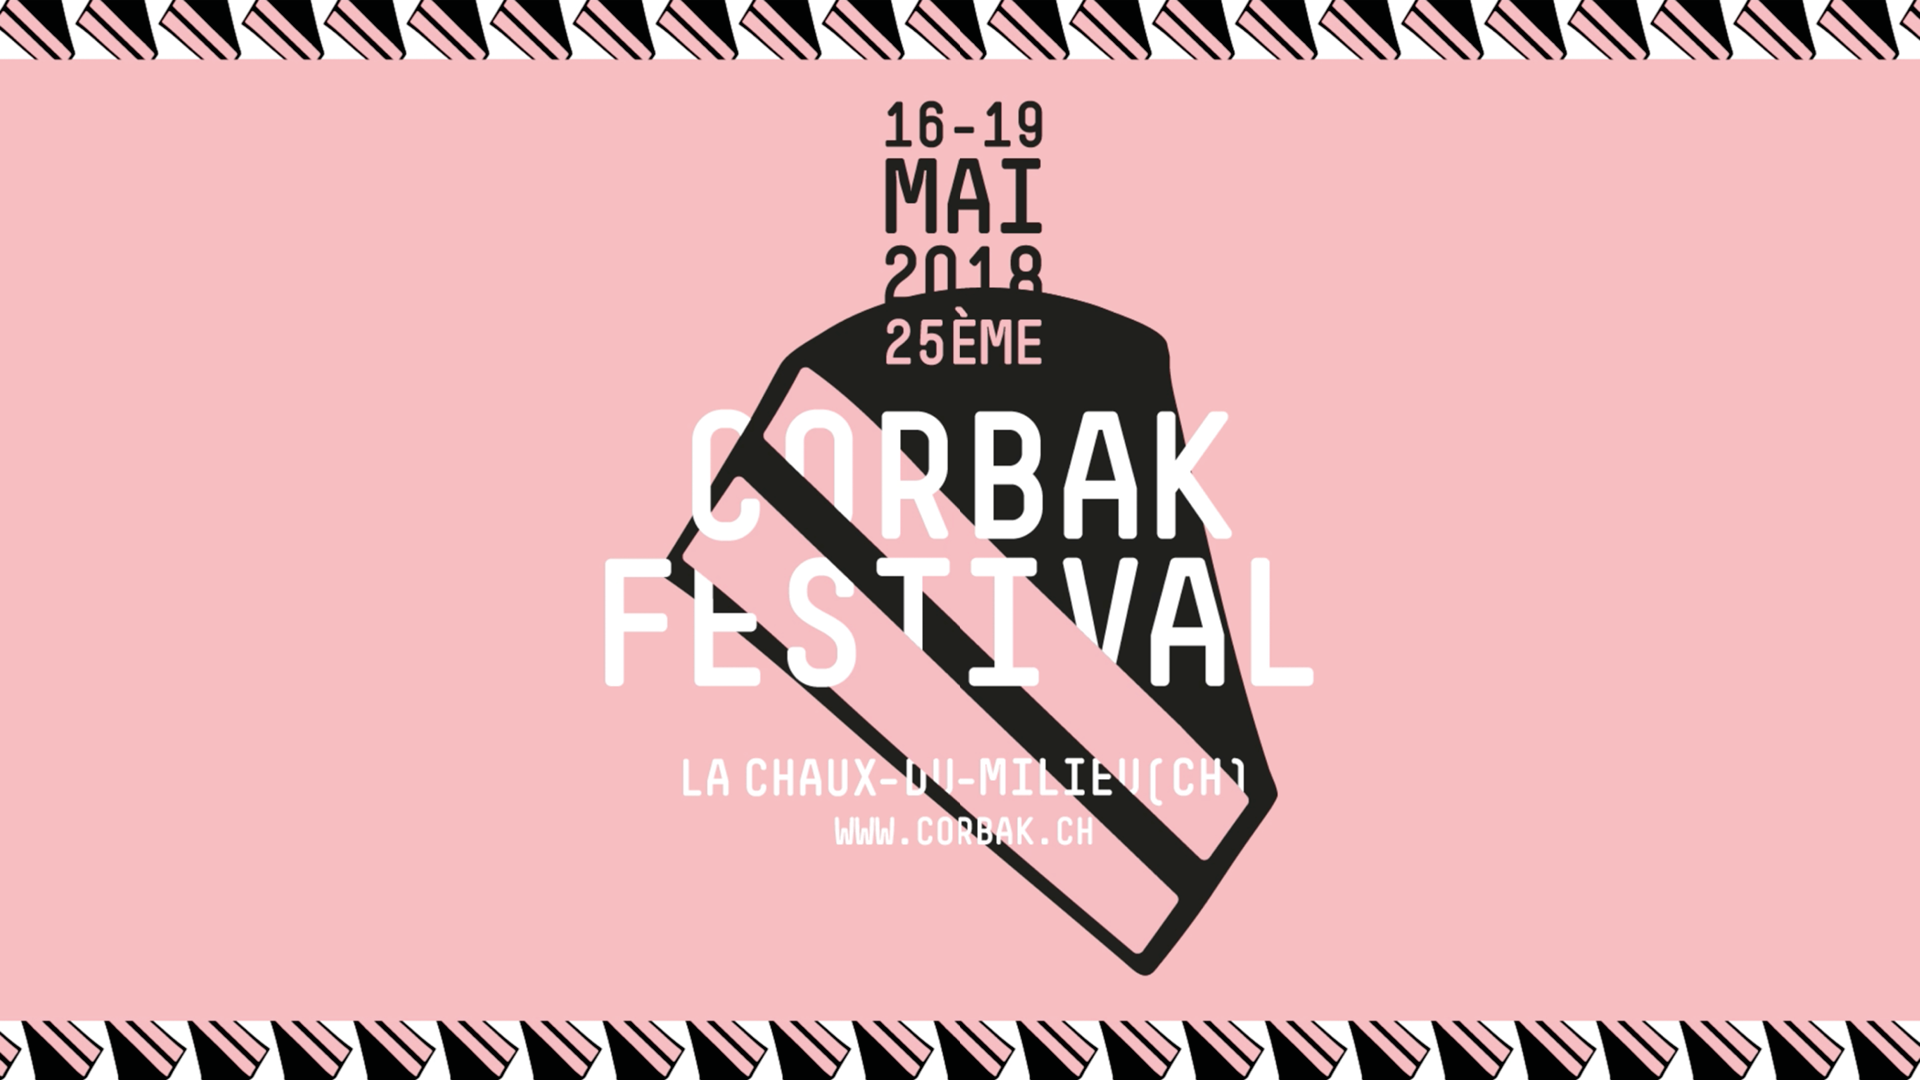 Corbak Festival 2018